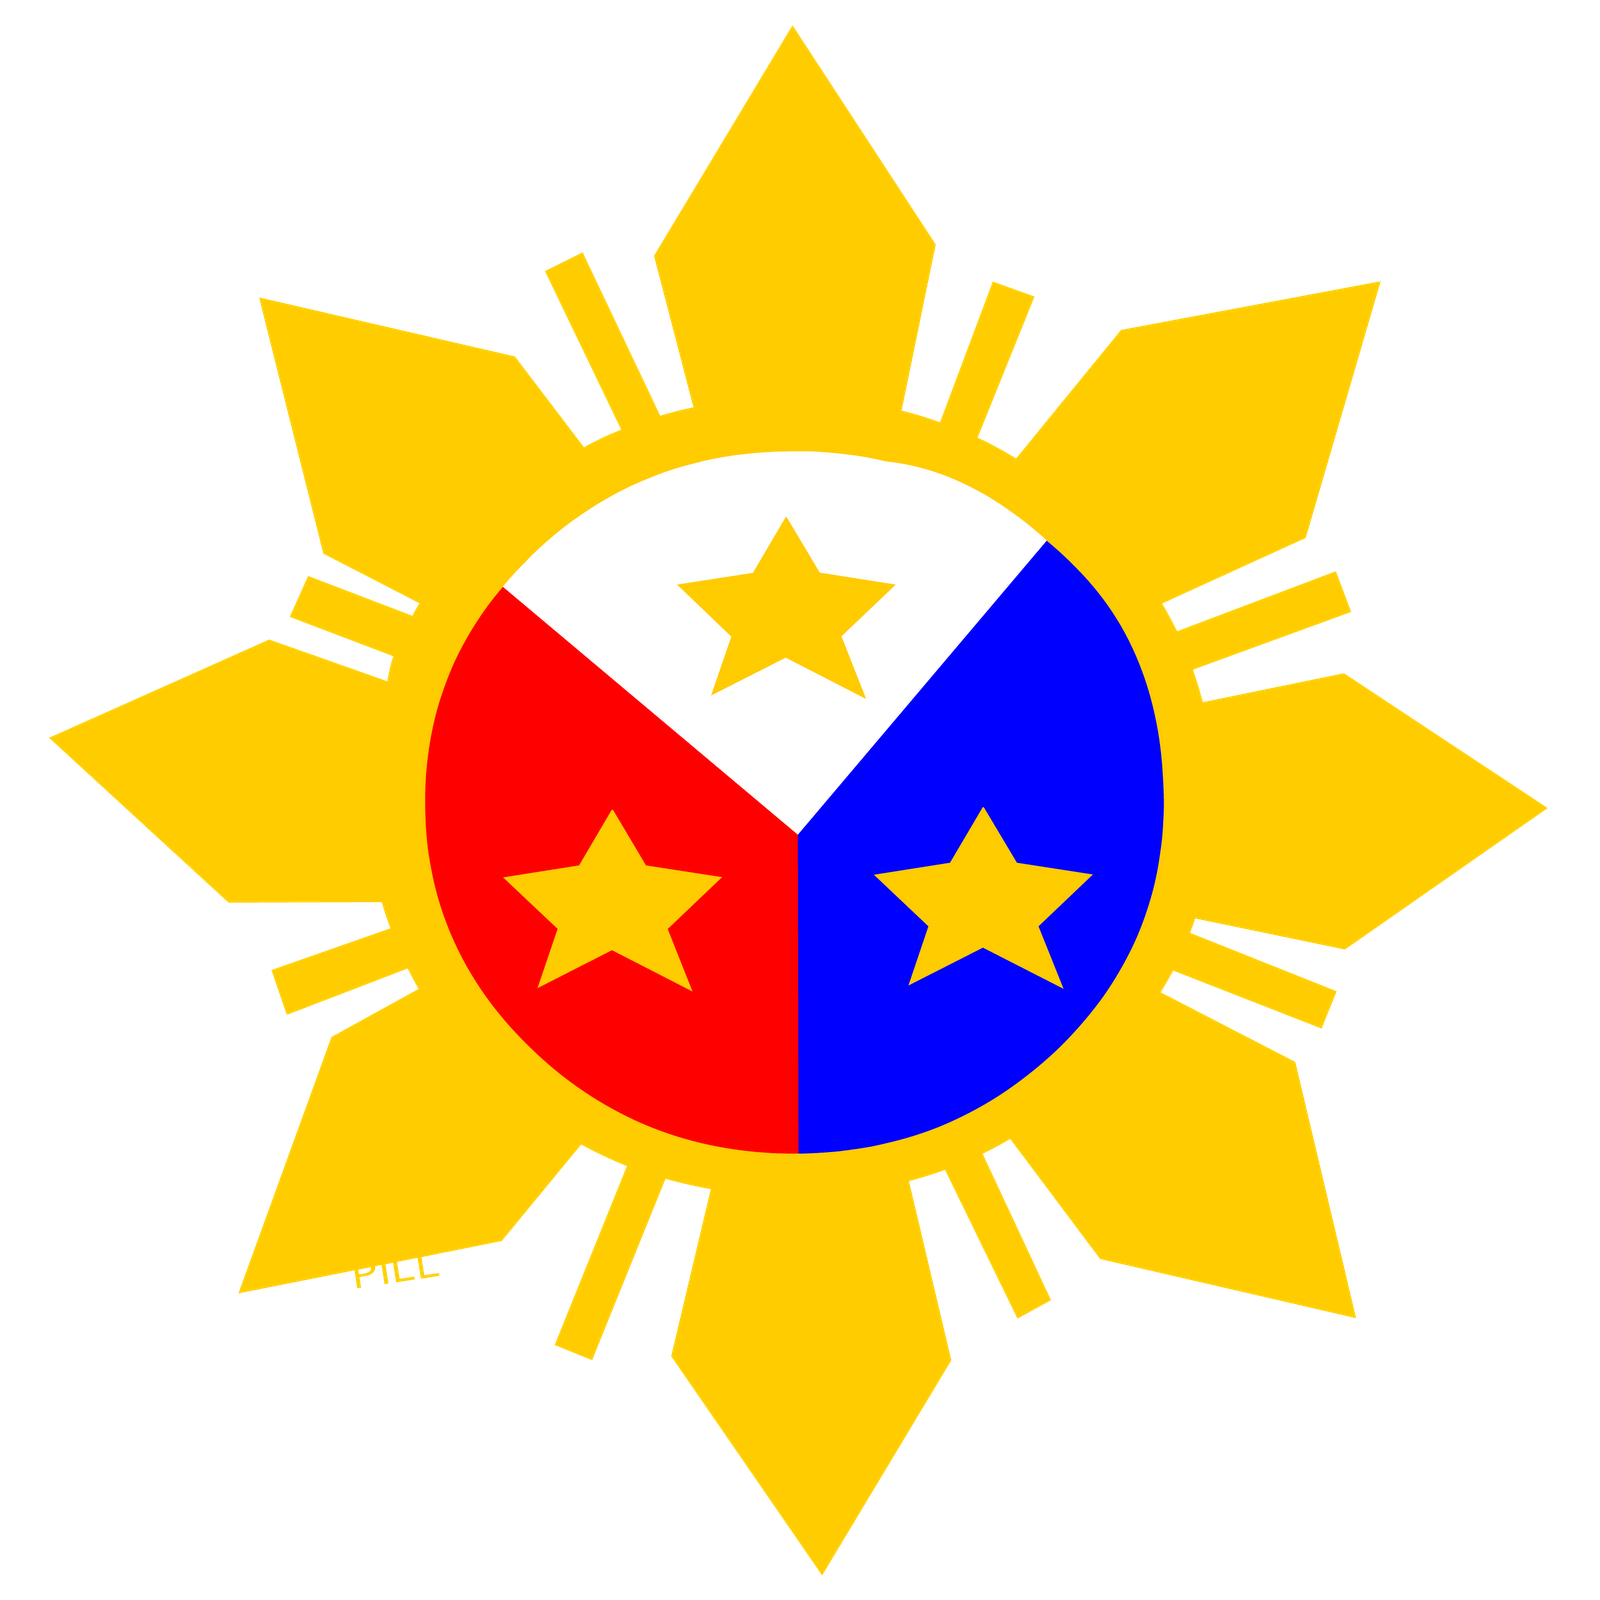 Philippine Flag Logo Design